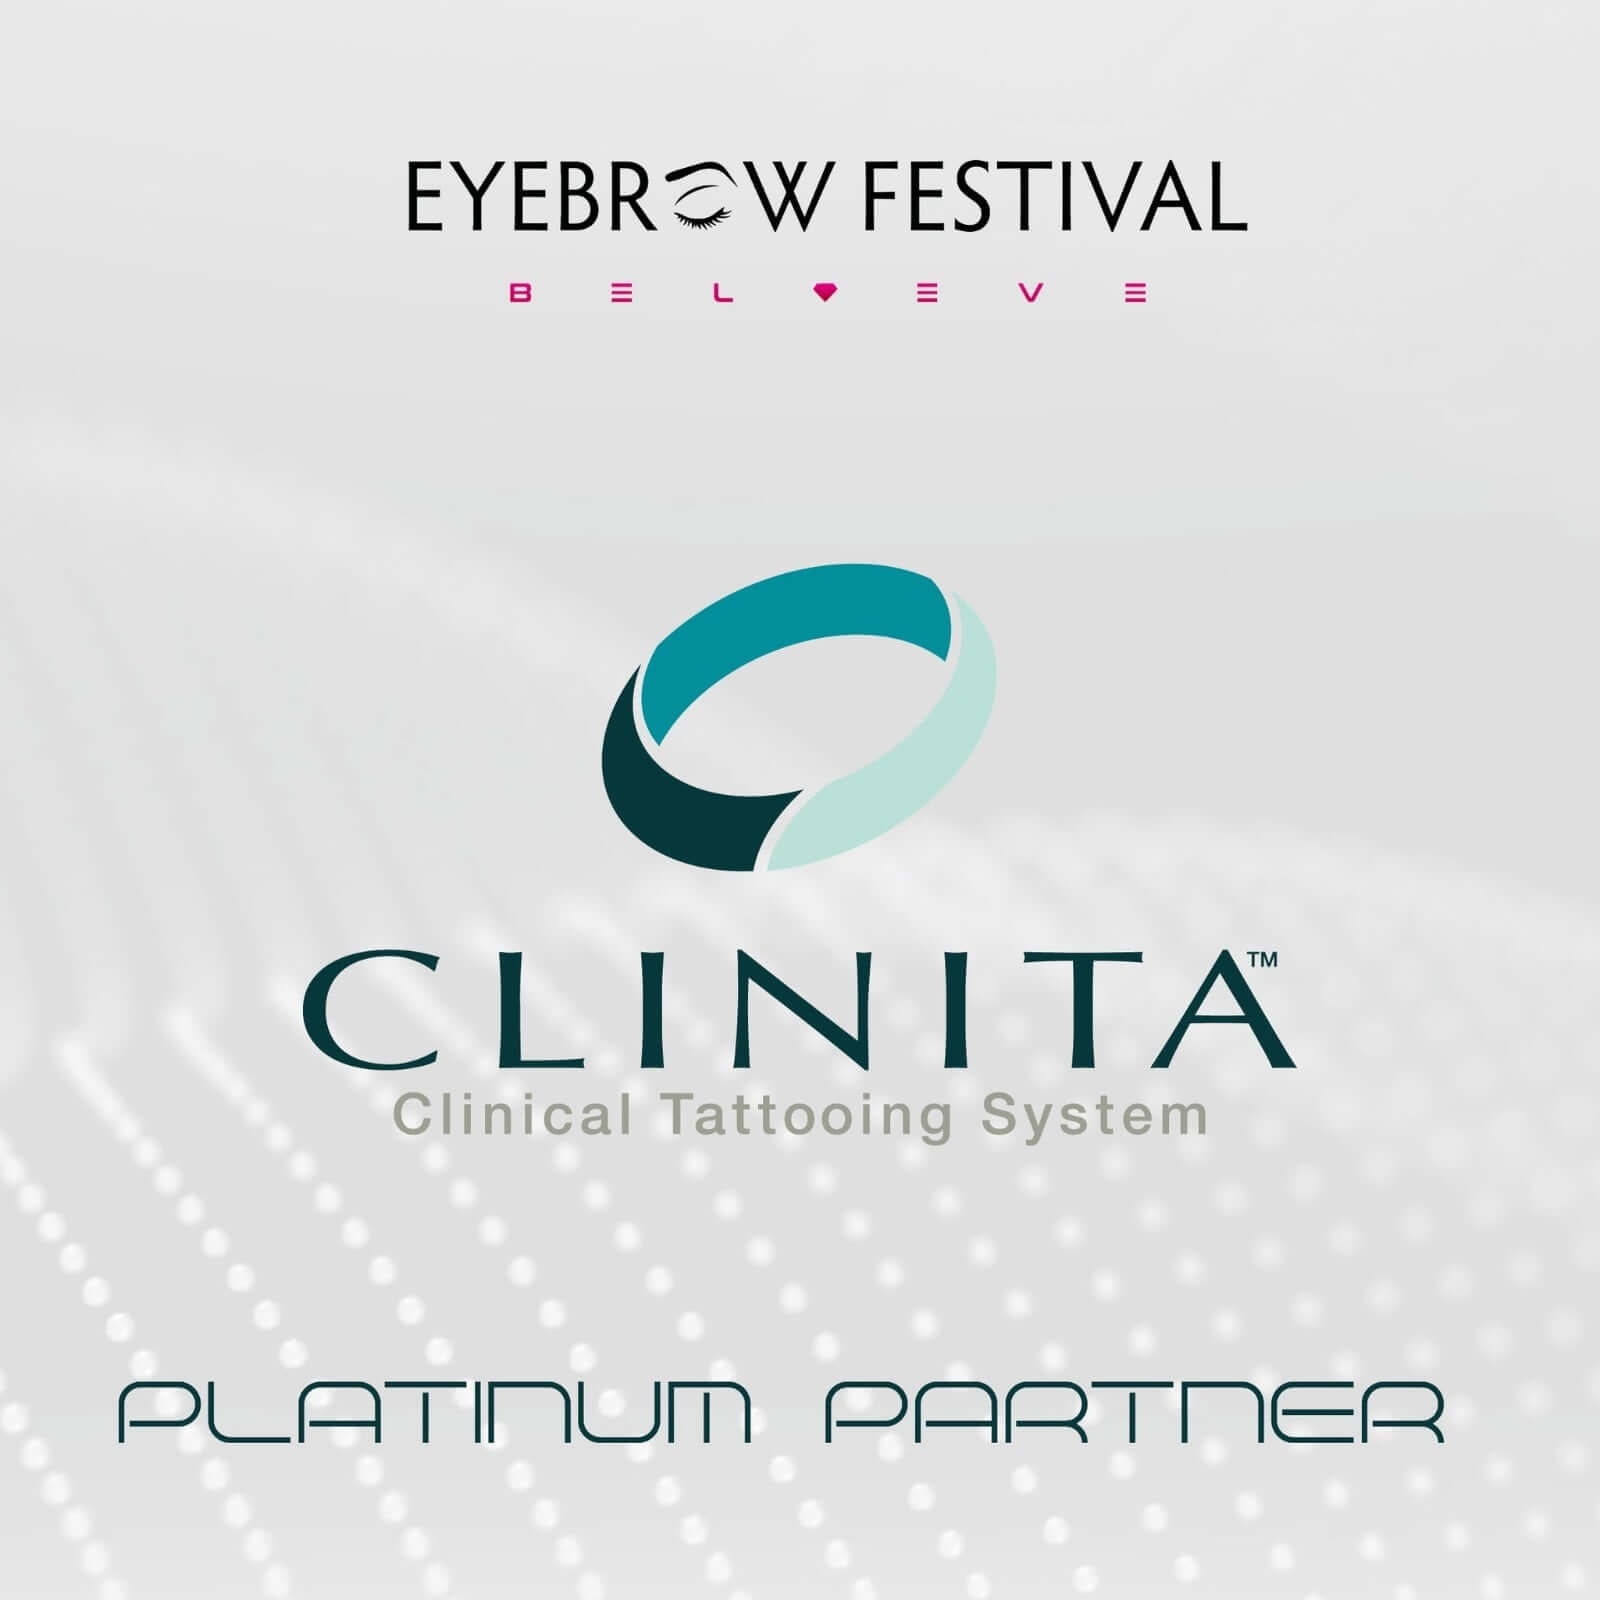 Eyebrow Festival di Rotterdam Clinita platinum sponsor ufficiale del festival